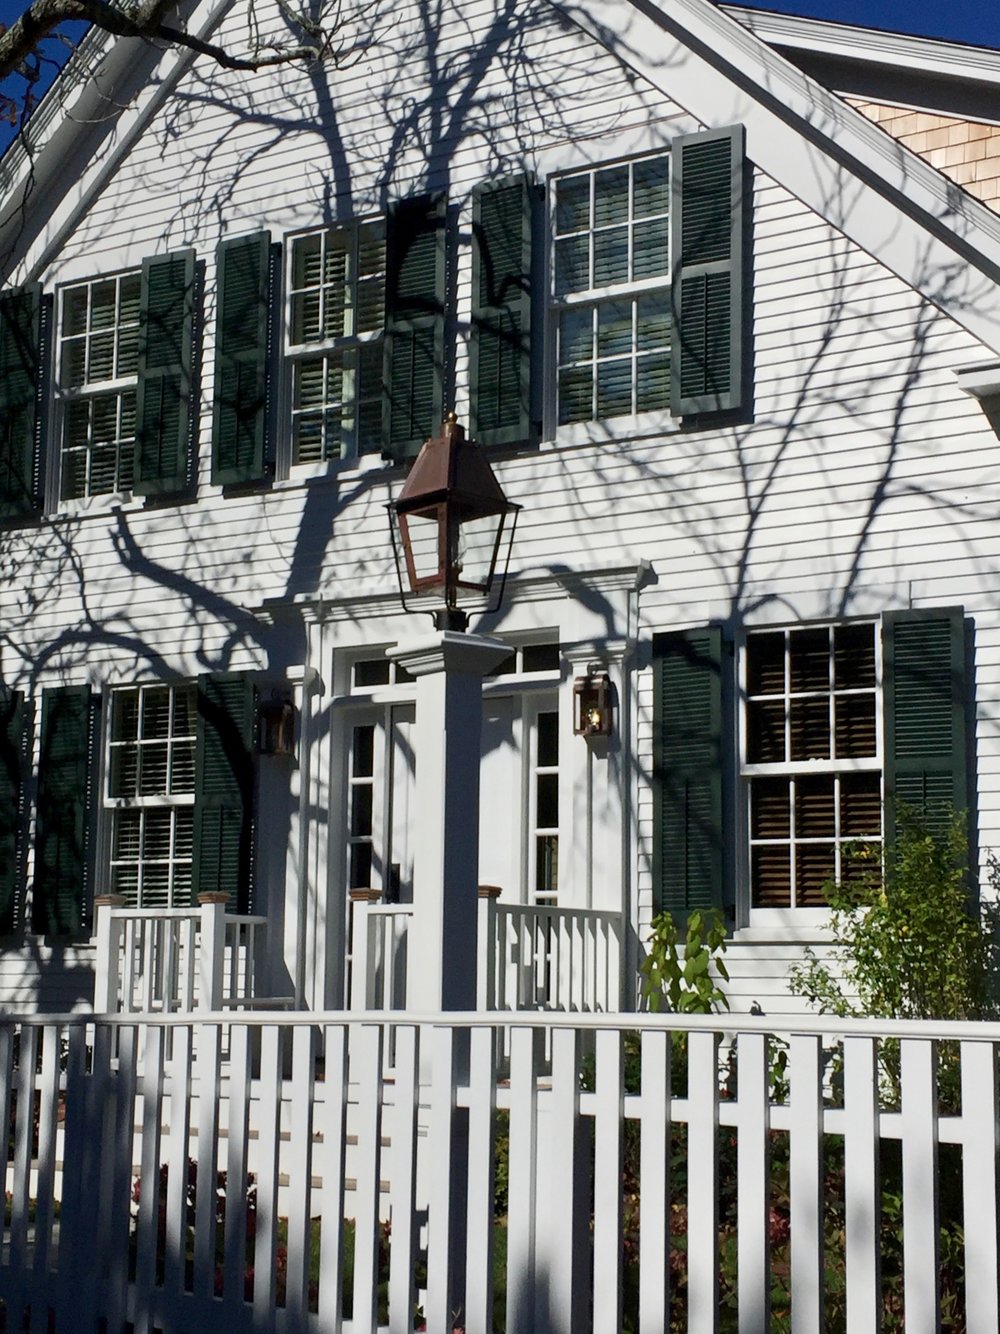 Quintessential White New England Homes - Linda Smith Davis - Nefl